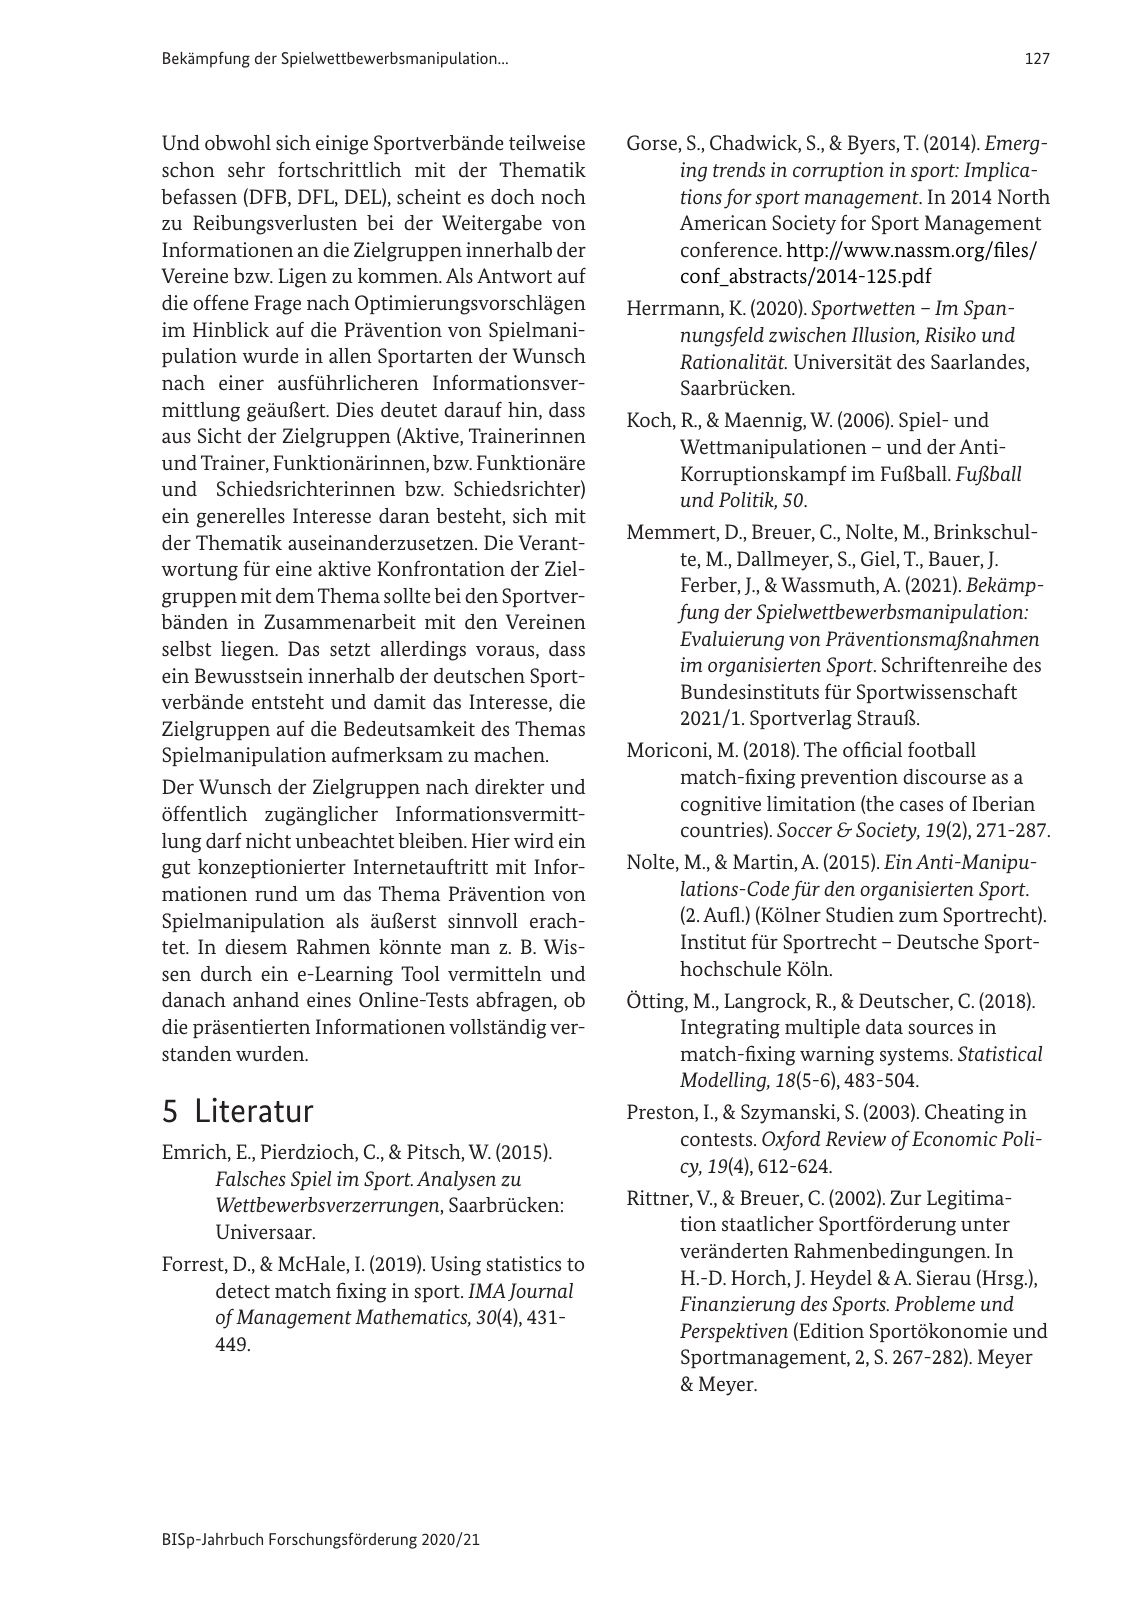 Vorschau BISp-Jahrbuch 2020/21 Seite 129